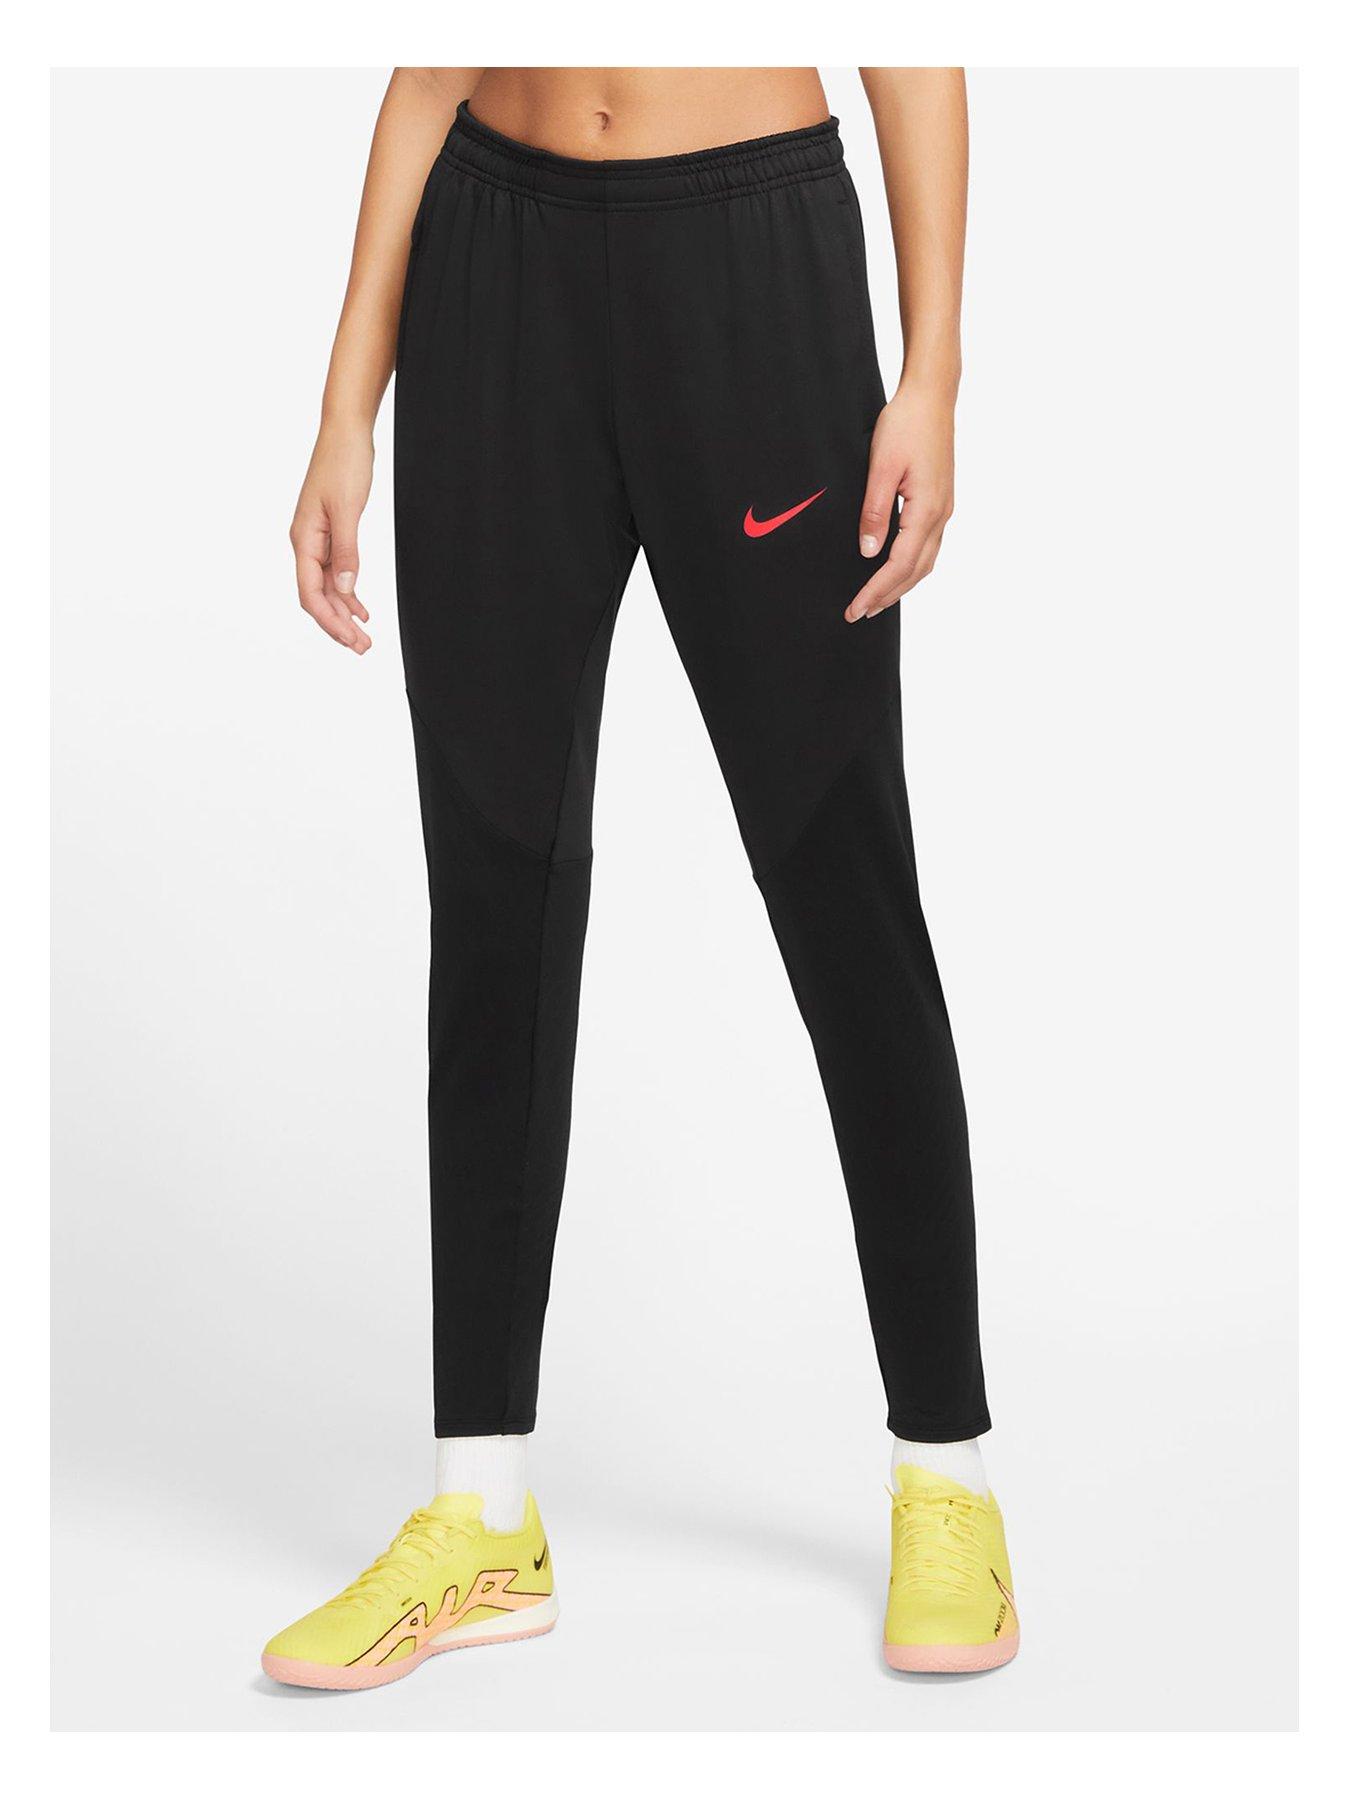 Nike Women's Dri fit Flex Essential Running Pants Black Size X